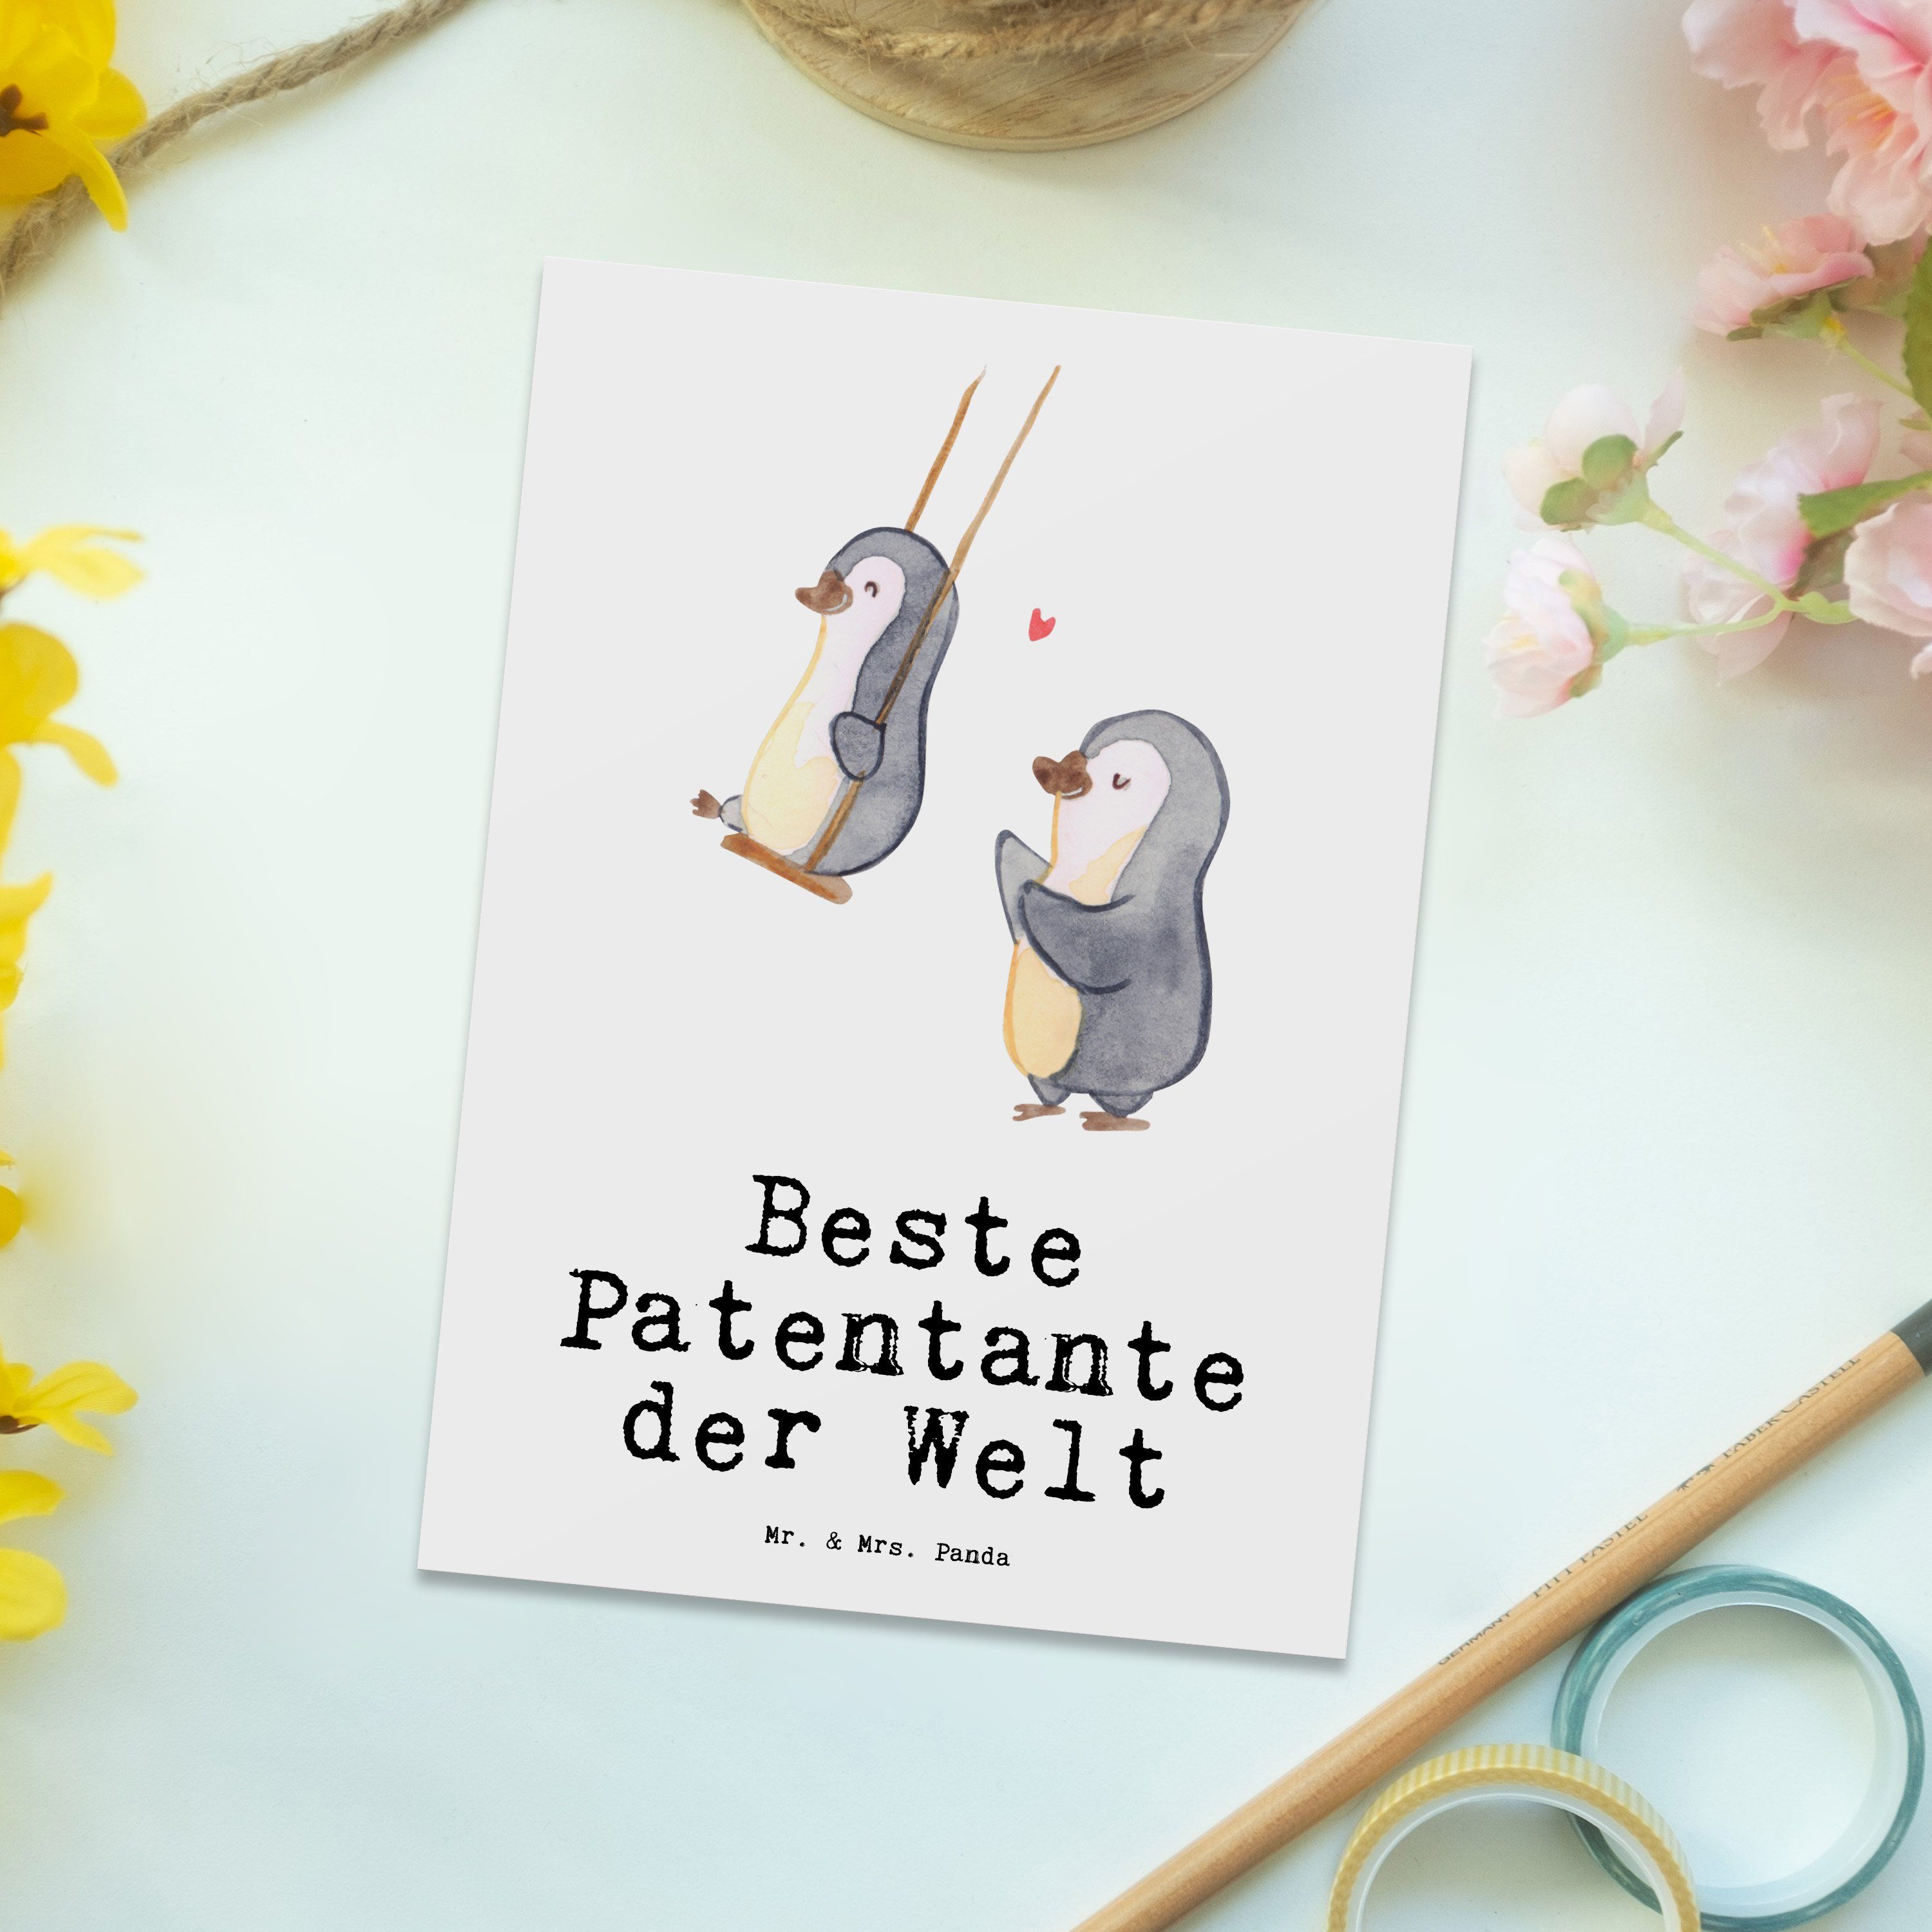 Mrs. Geschenkkarte, - Patentante Panda - Postkarte Beste Pinguin Mr. & der Weiß Geschenk, Welt B